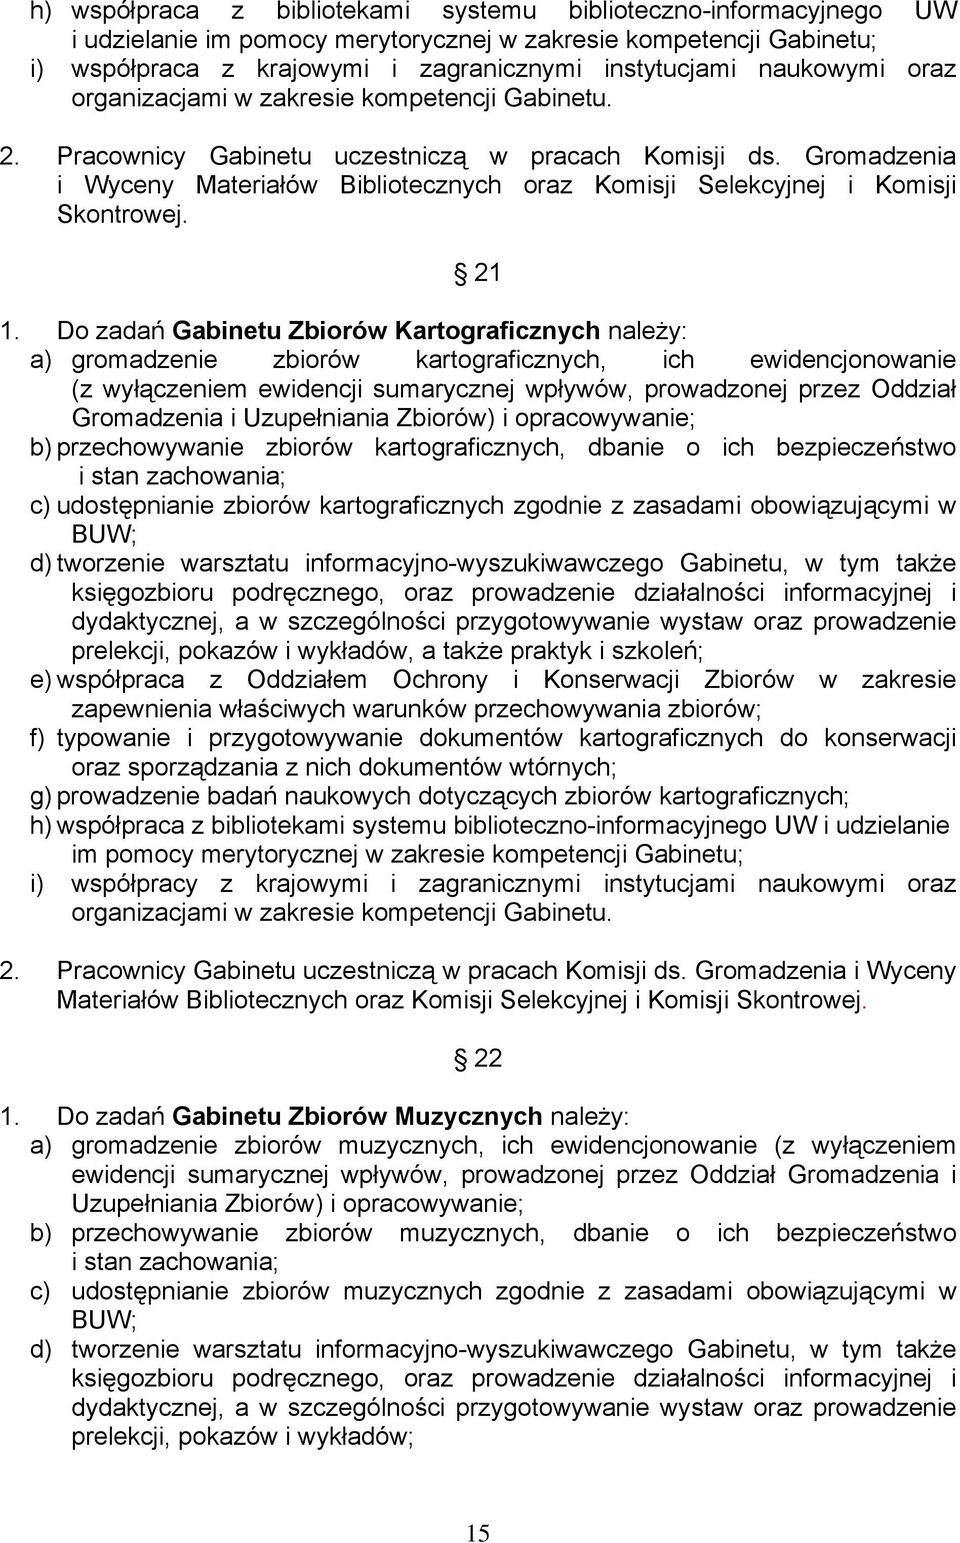 Gromadzenia i Wyceny Materiałów Bibliotecznych oraz Komisji Selekcyjnej i Komisji Skontrowej. 21 1.